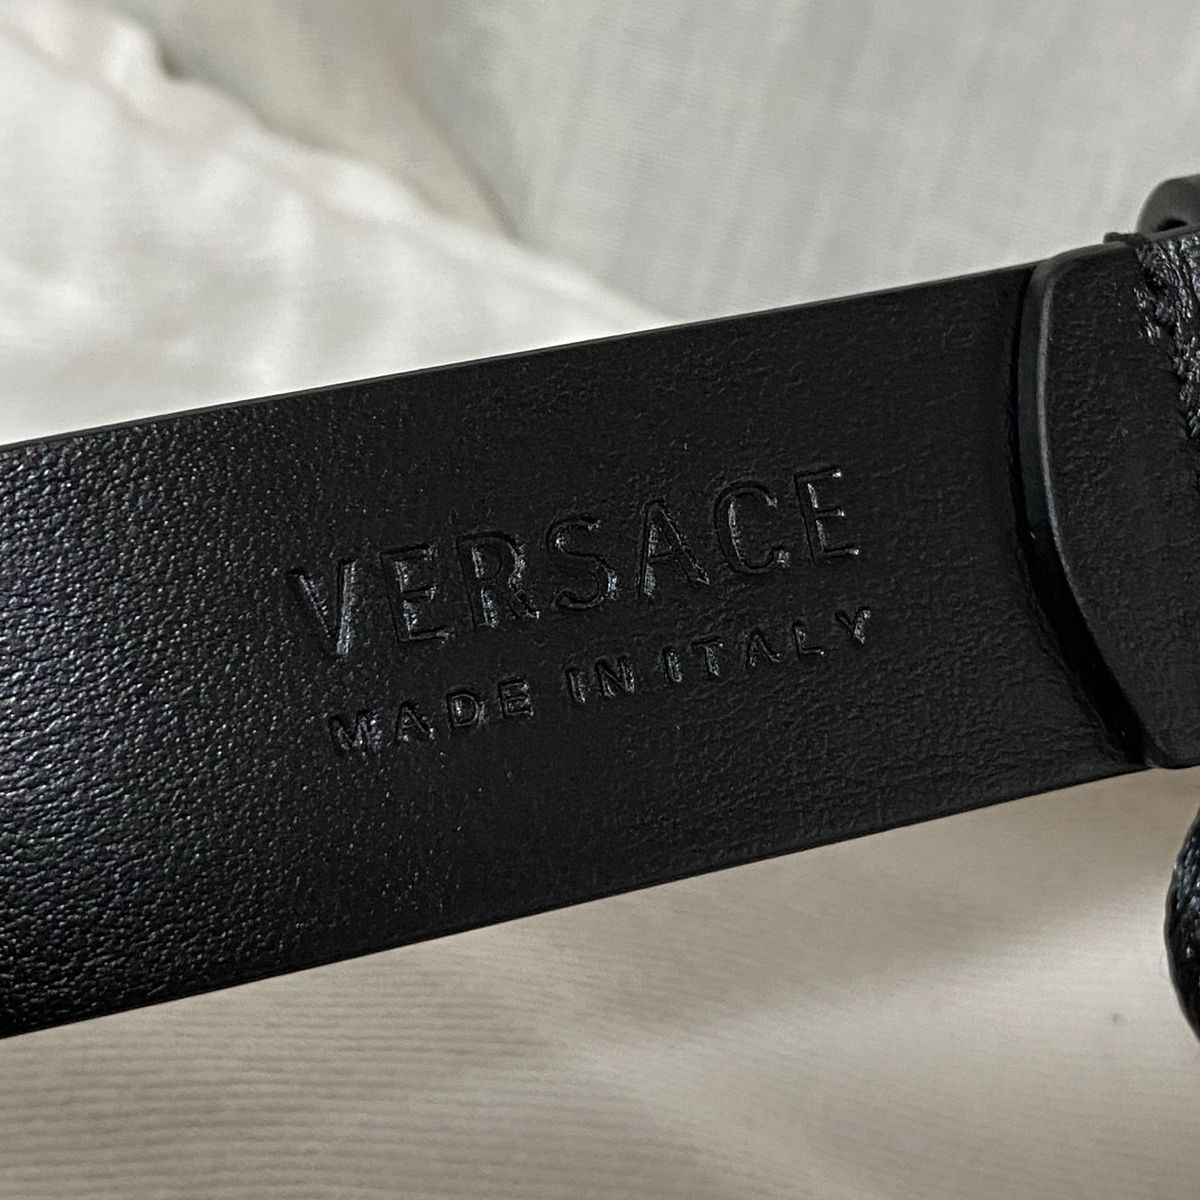 新品 本物正規品 VERSACE メンズ レザー ベルト メデューサスタッズ 黒